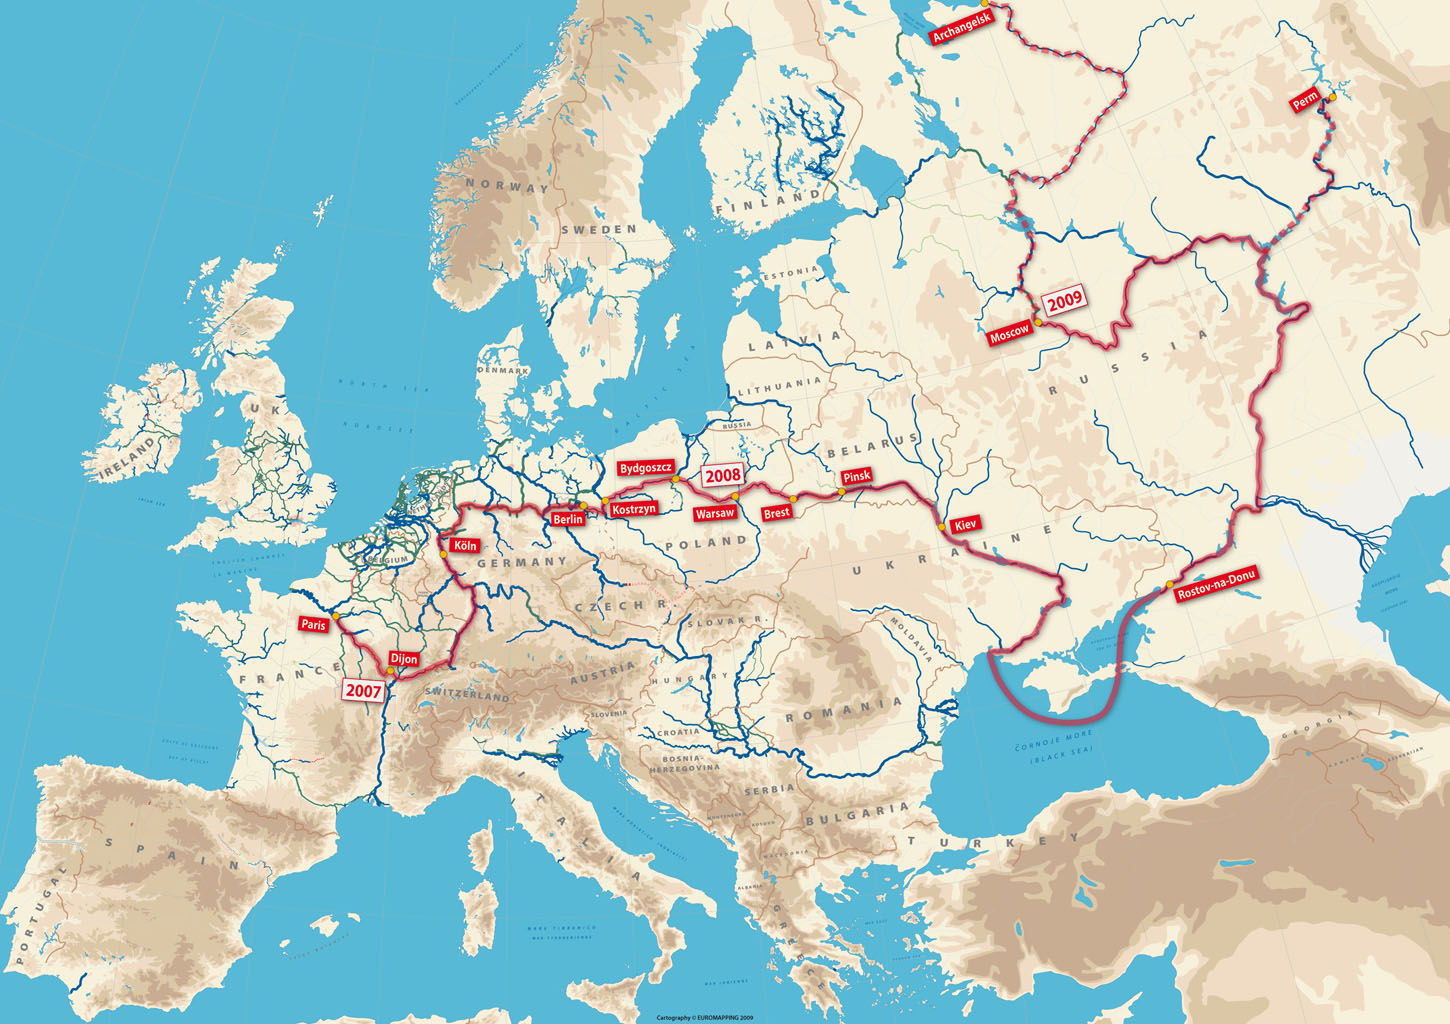 Реки европы. Карта речных путей Европы. Судоходные каналы Европы. Водные пути Европы. Речные пути Европы.